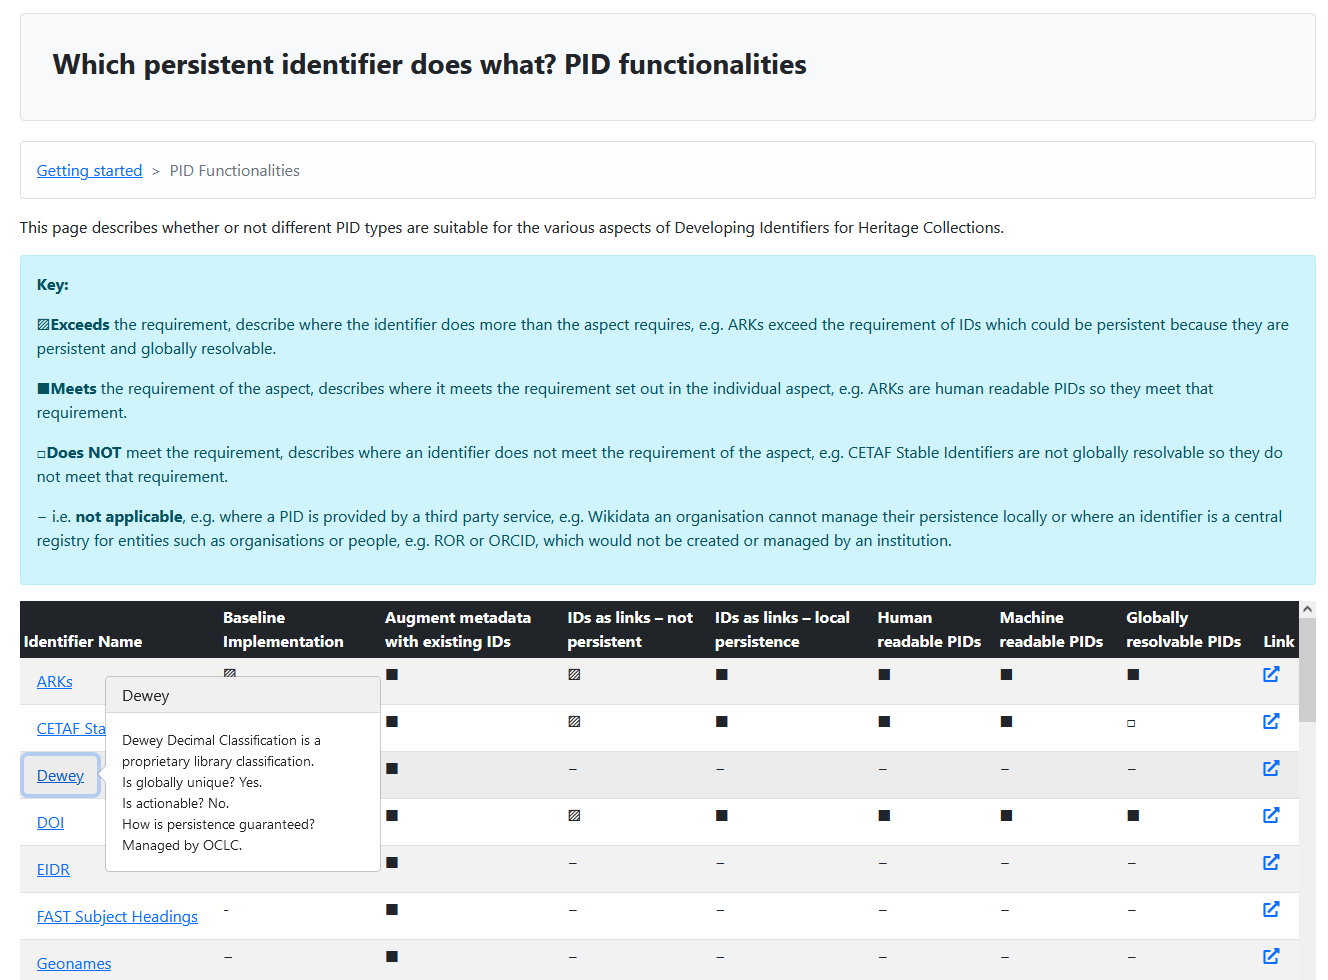 Revised PID functionalities table